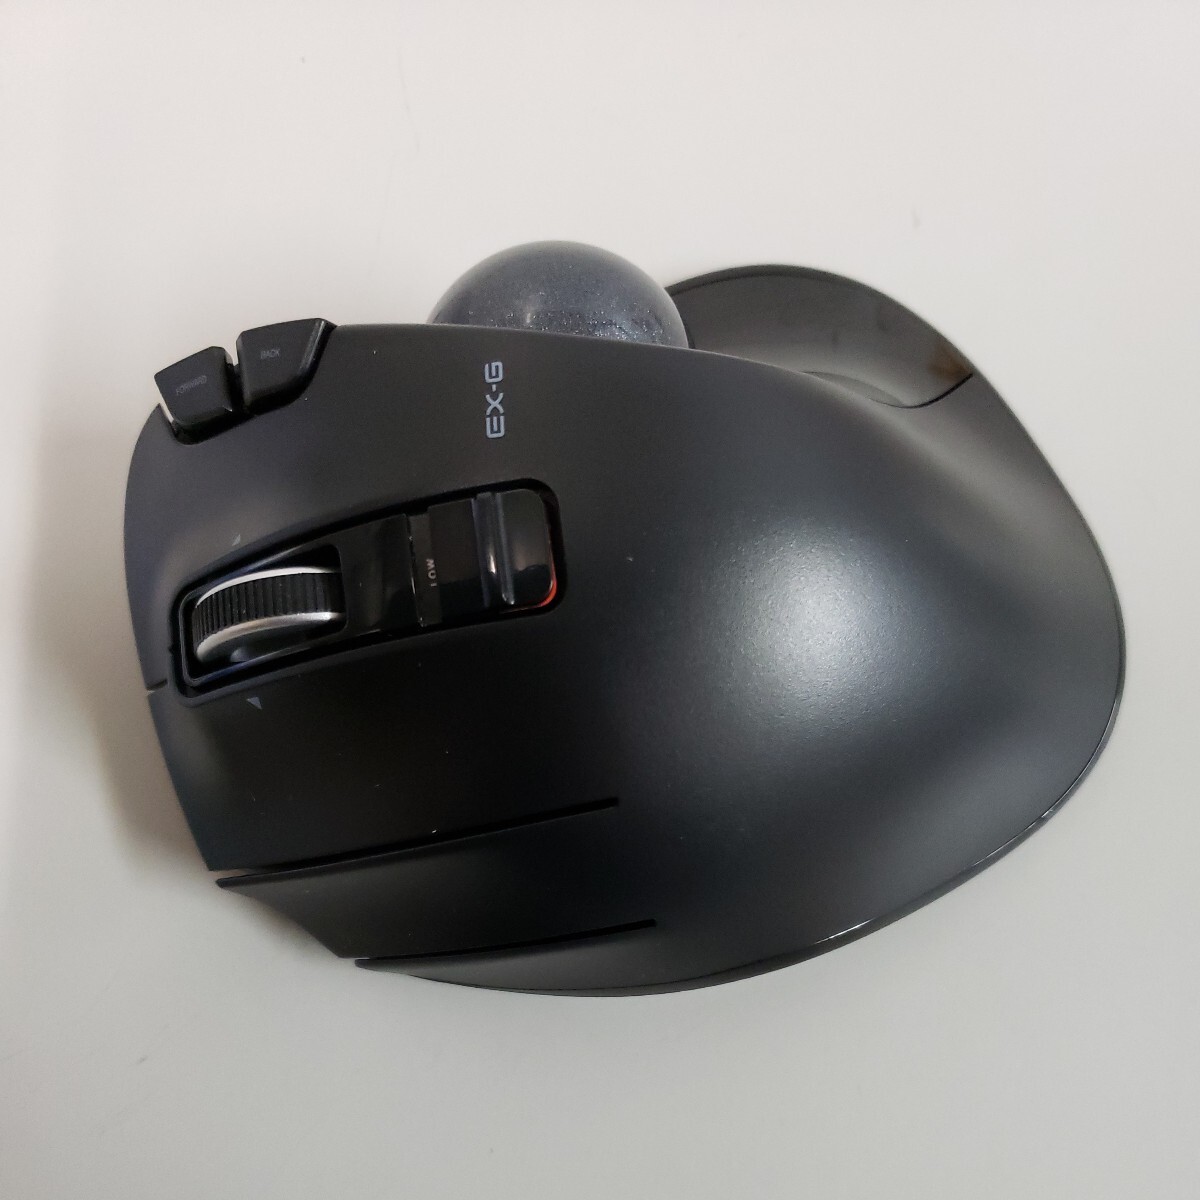 603y0818* Elecom мышь беспроводной ( ресивер приложен ) шаровой манипулятор левый рука для 6 кнопка черный M-XT4DRBK